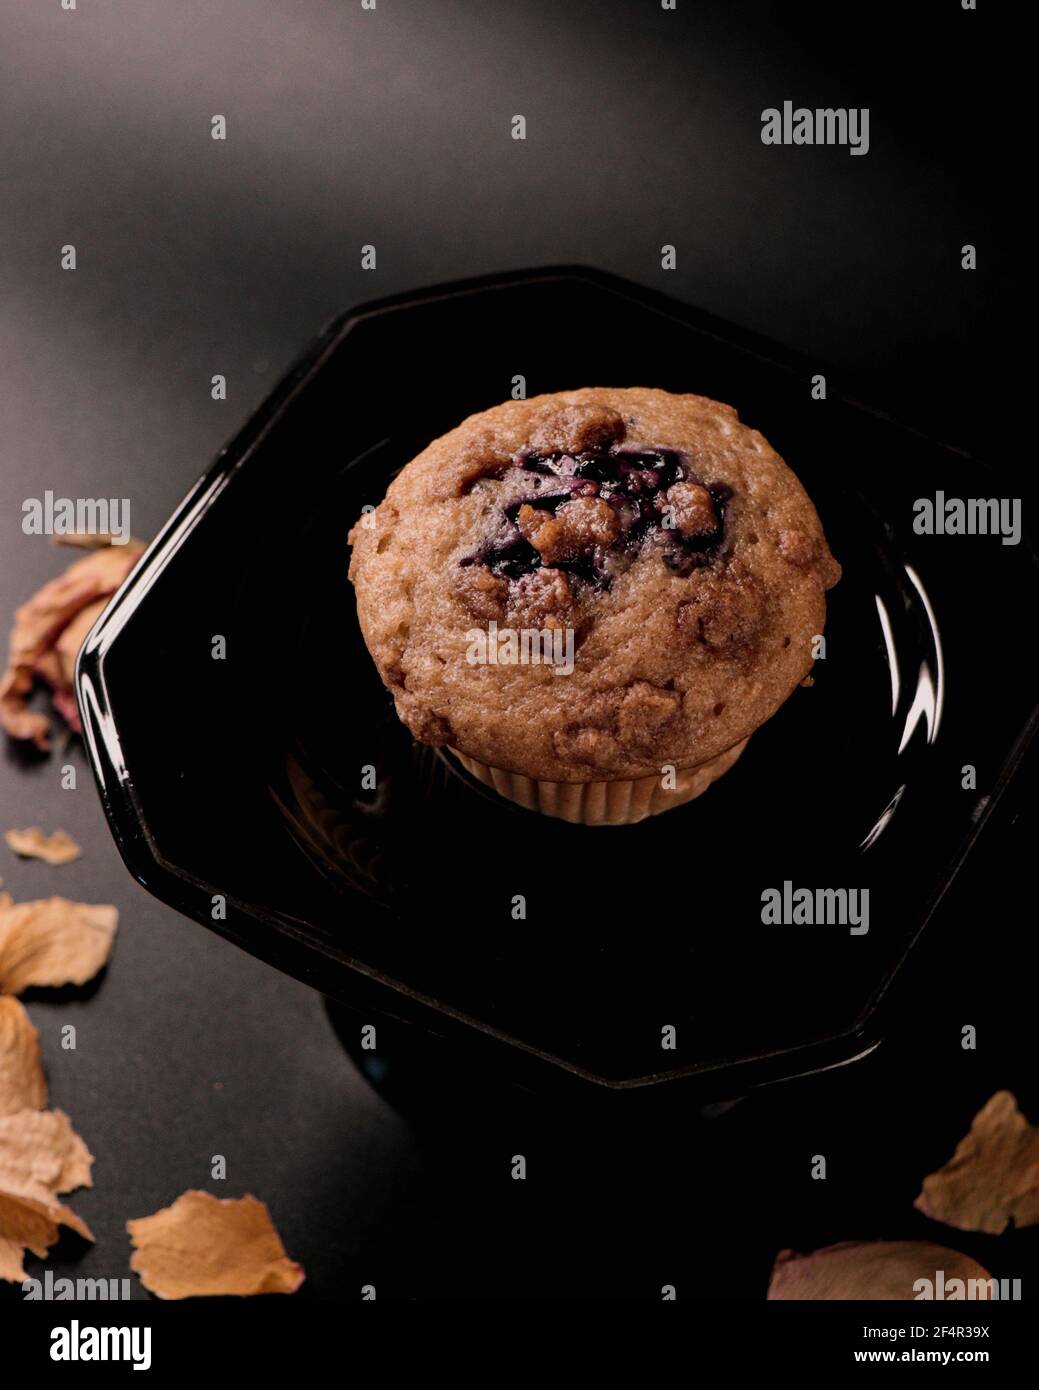 Muffin de bleuet cannelle sur plaque et fond noirs, règle des tiers, photographie alimentaire haute résolution Banque D'Images